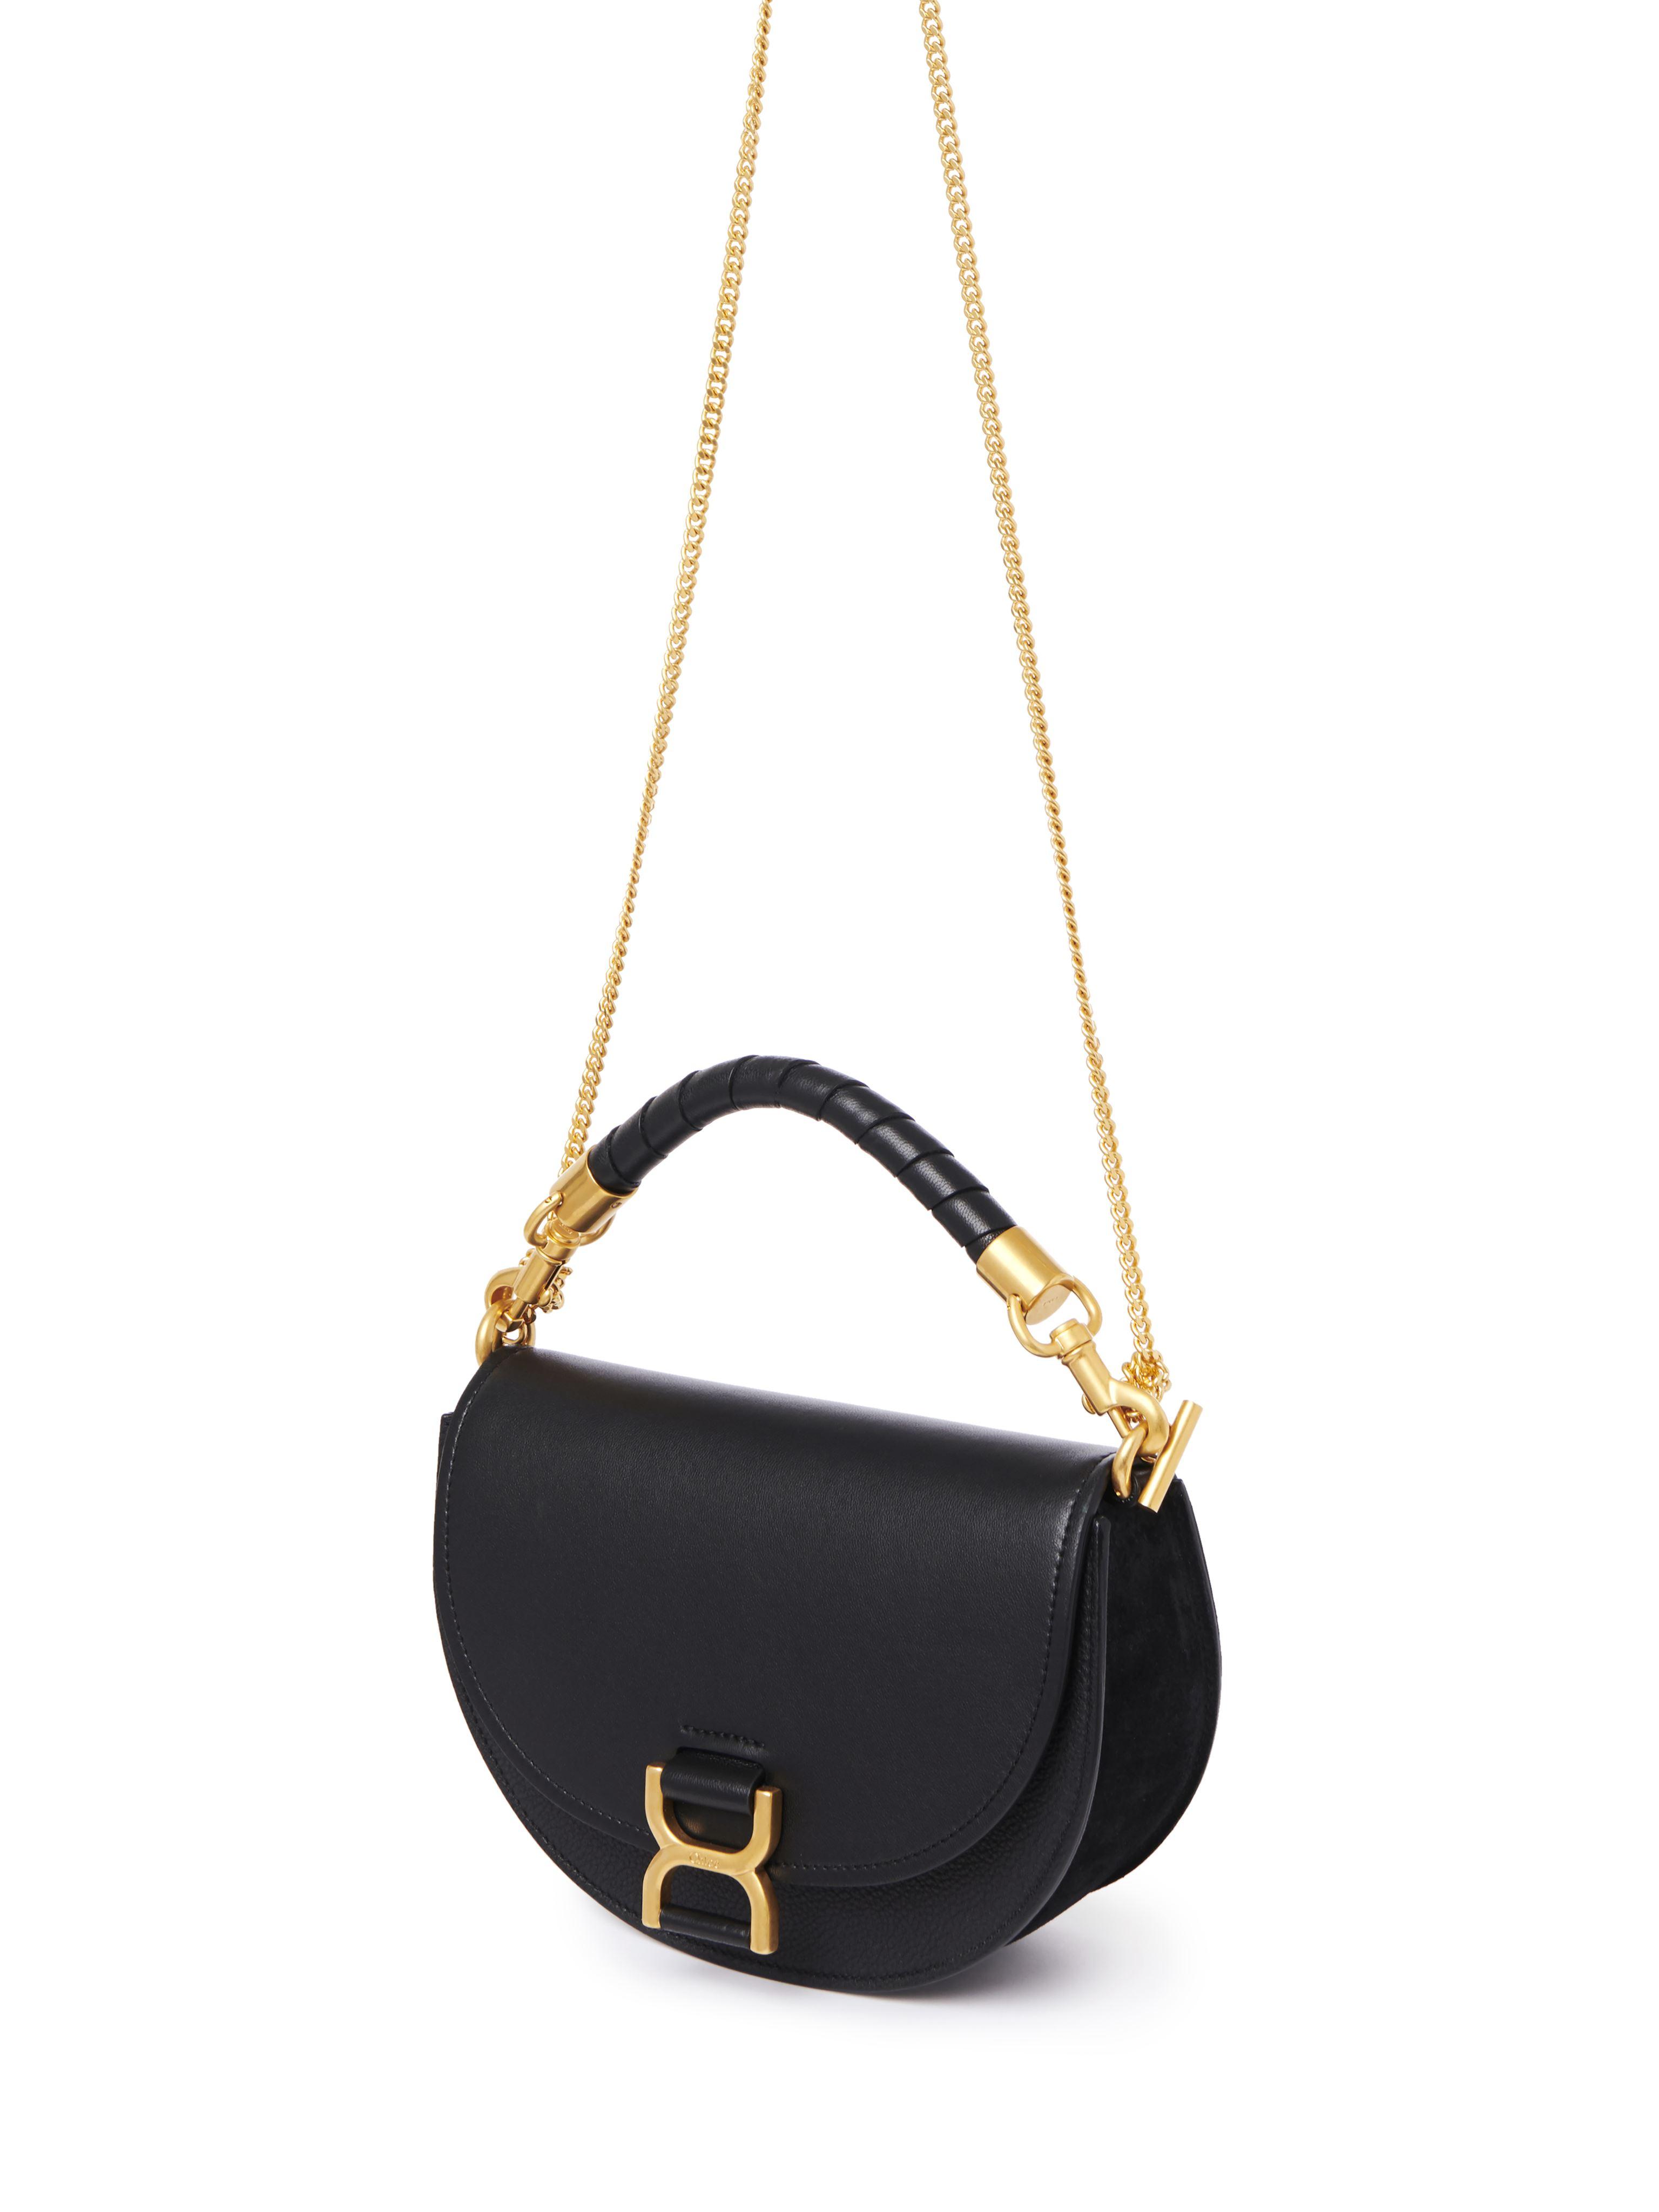 Chloé Boutique Saint-Honoré Paris: Marcie Chain Flap Black Bag - Luxferity